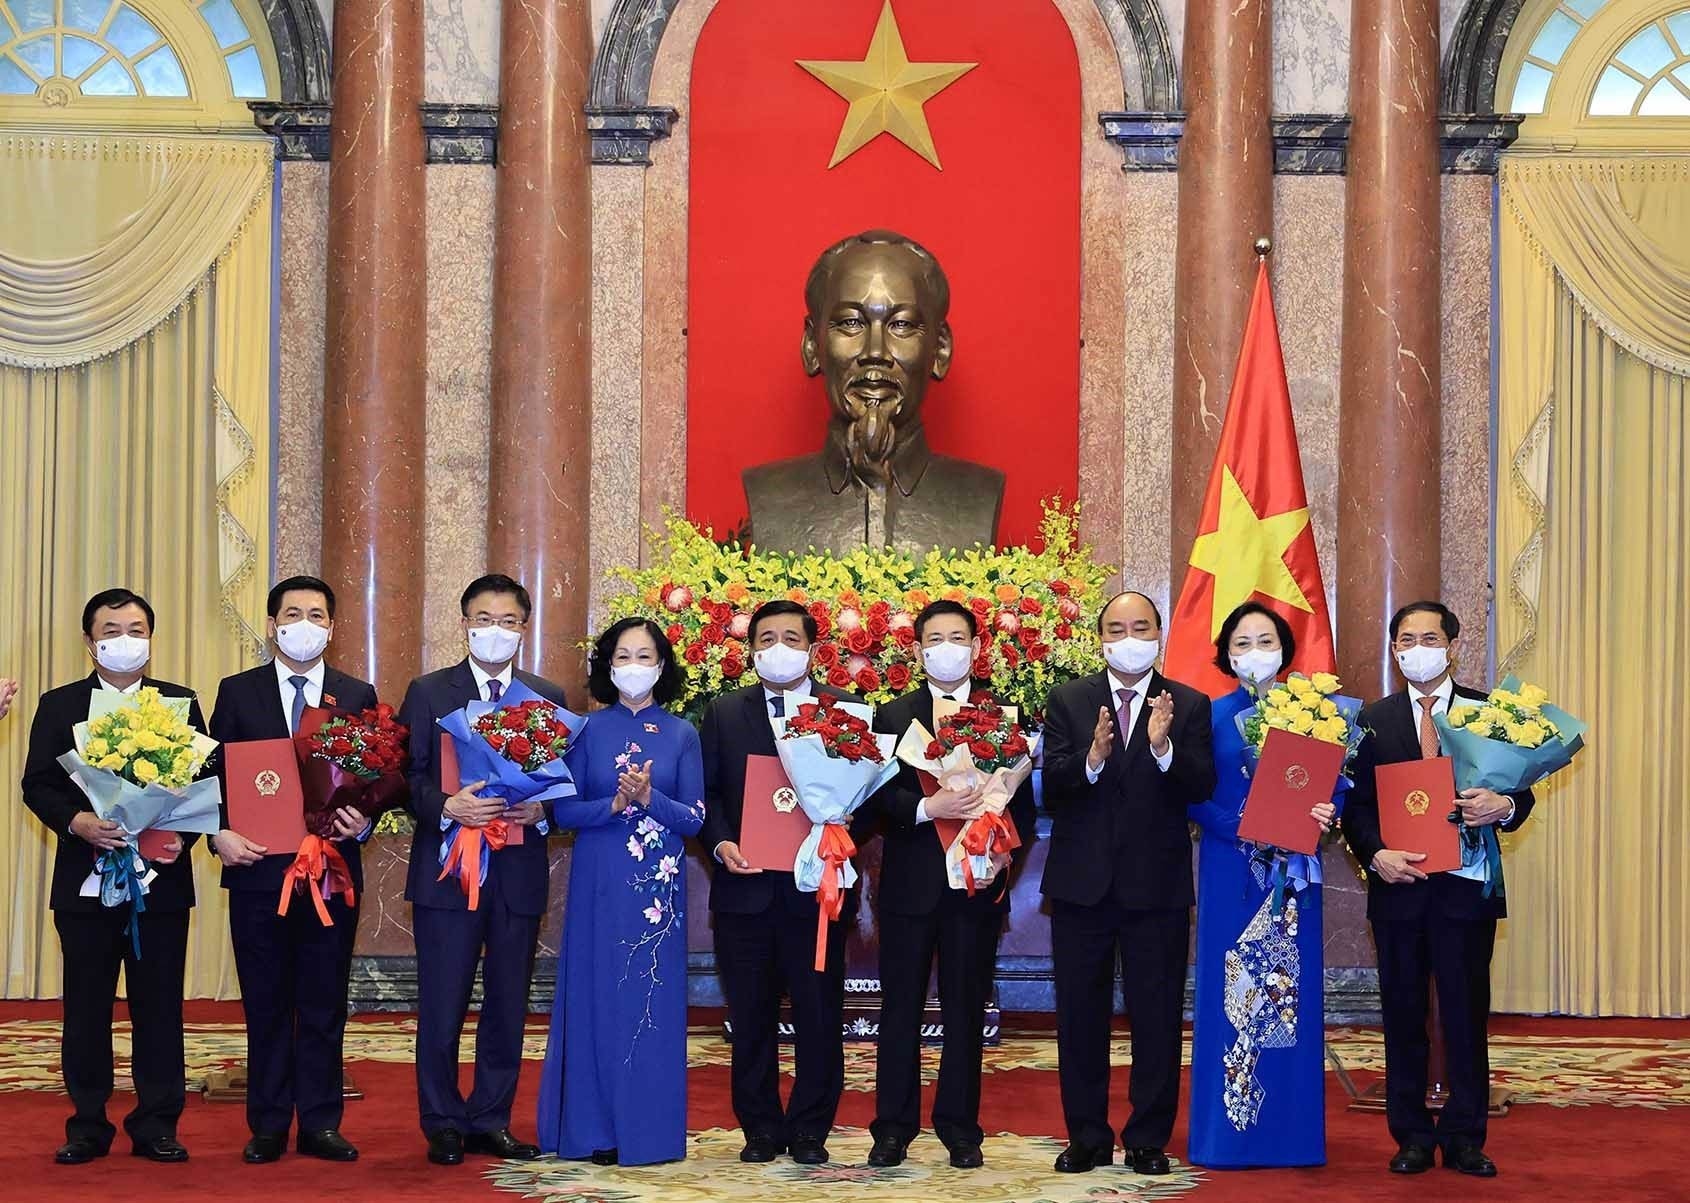 Chủ tịch nước Nguyễn Xuân Phúc trao Quyết định bổ nhiệm cho các thành viên Chính phủ. Bộ trưởng Bộ Ngoại giao Bùi Thanh Sơn (người đứng ngoài cùng bên phải)